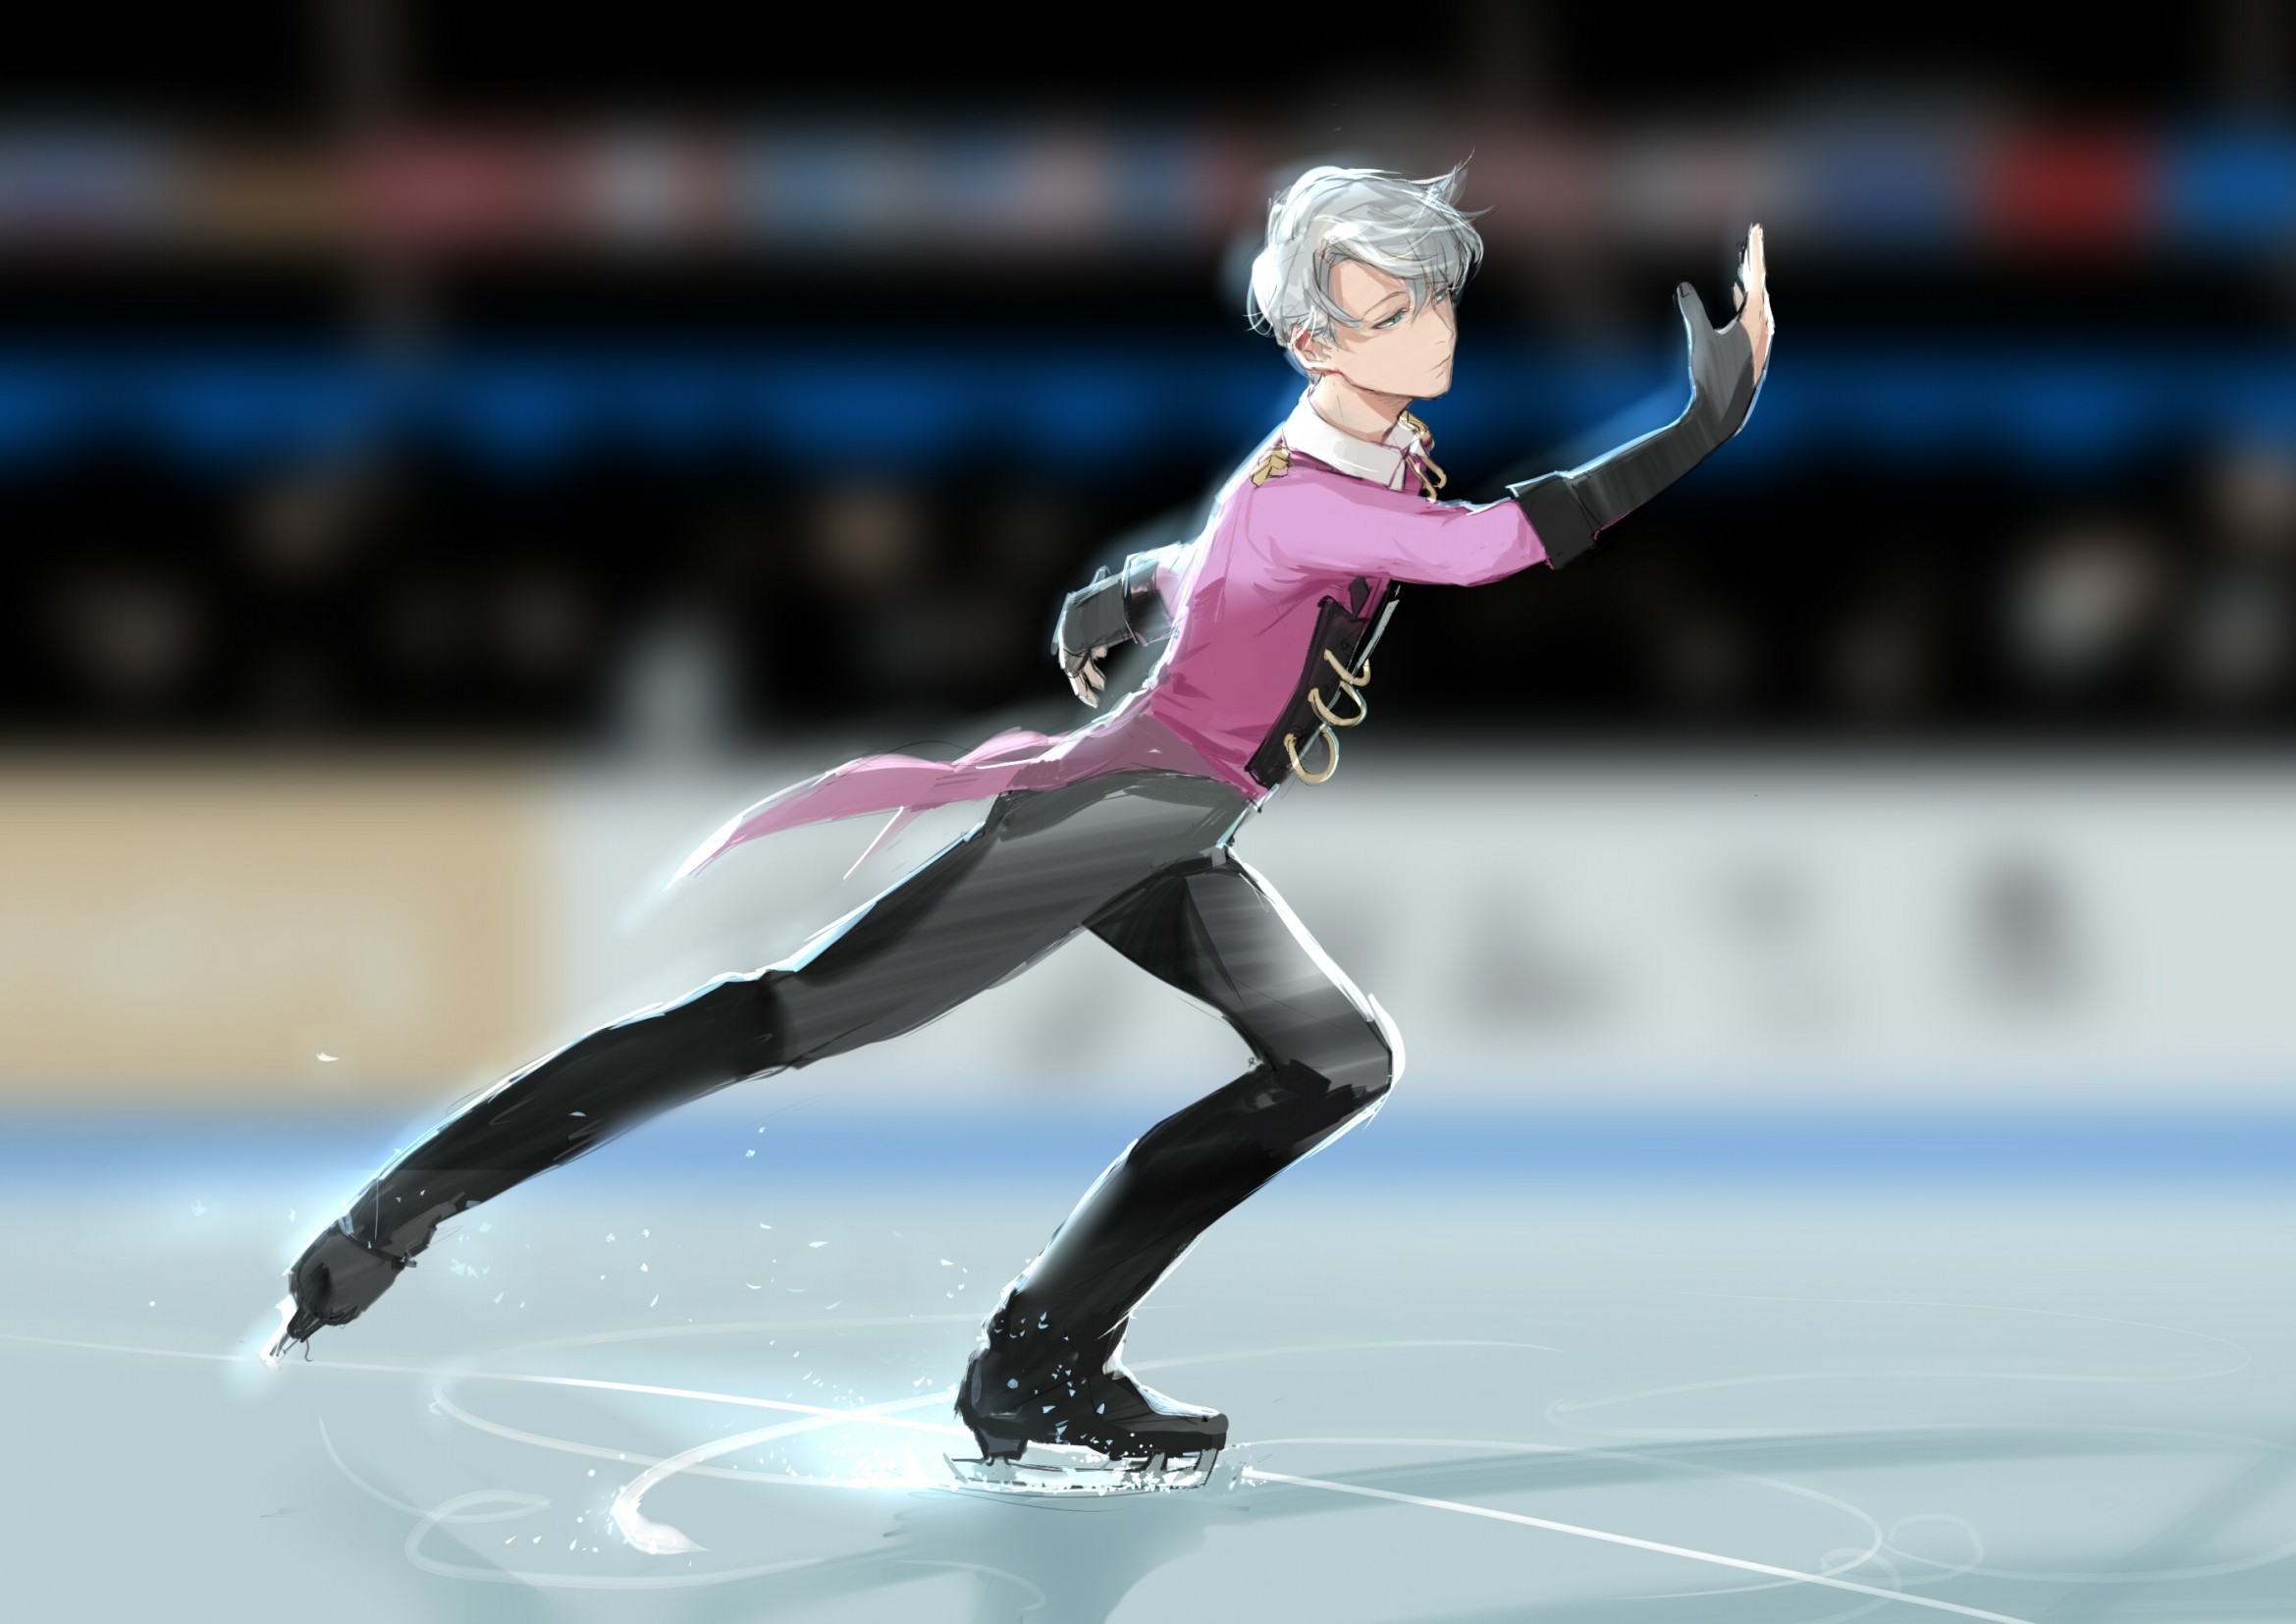 fond d'écran de patinage sur glace,patinage artistique,des sports,patinage artistique,patinage sur glace,patin à glace